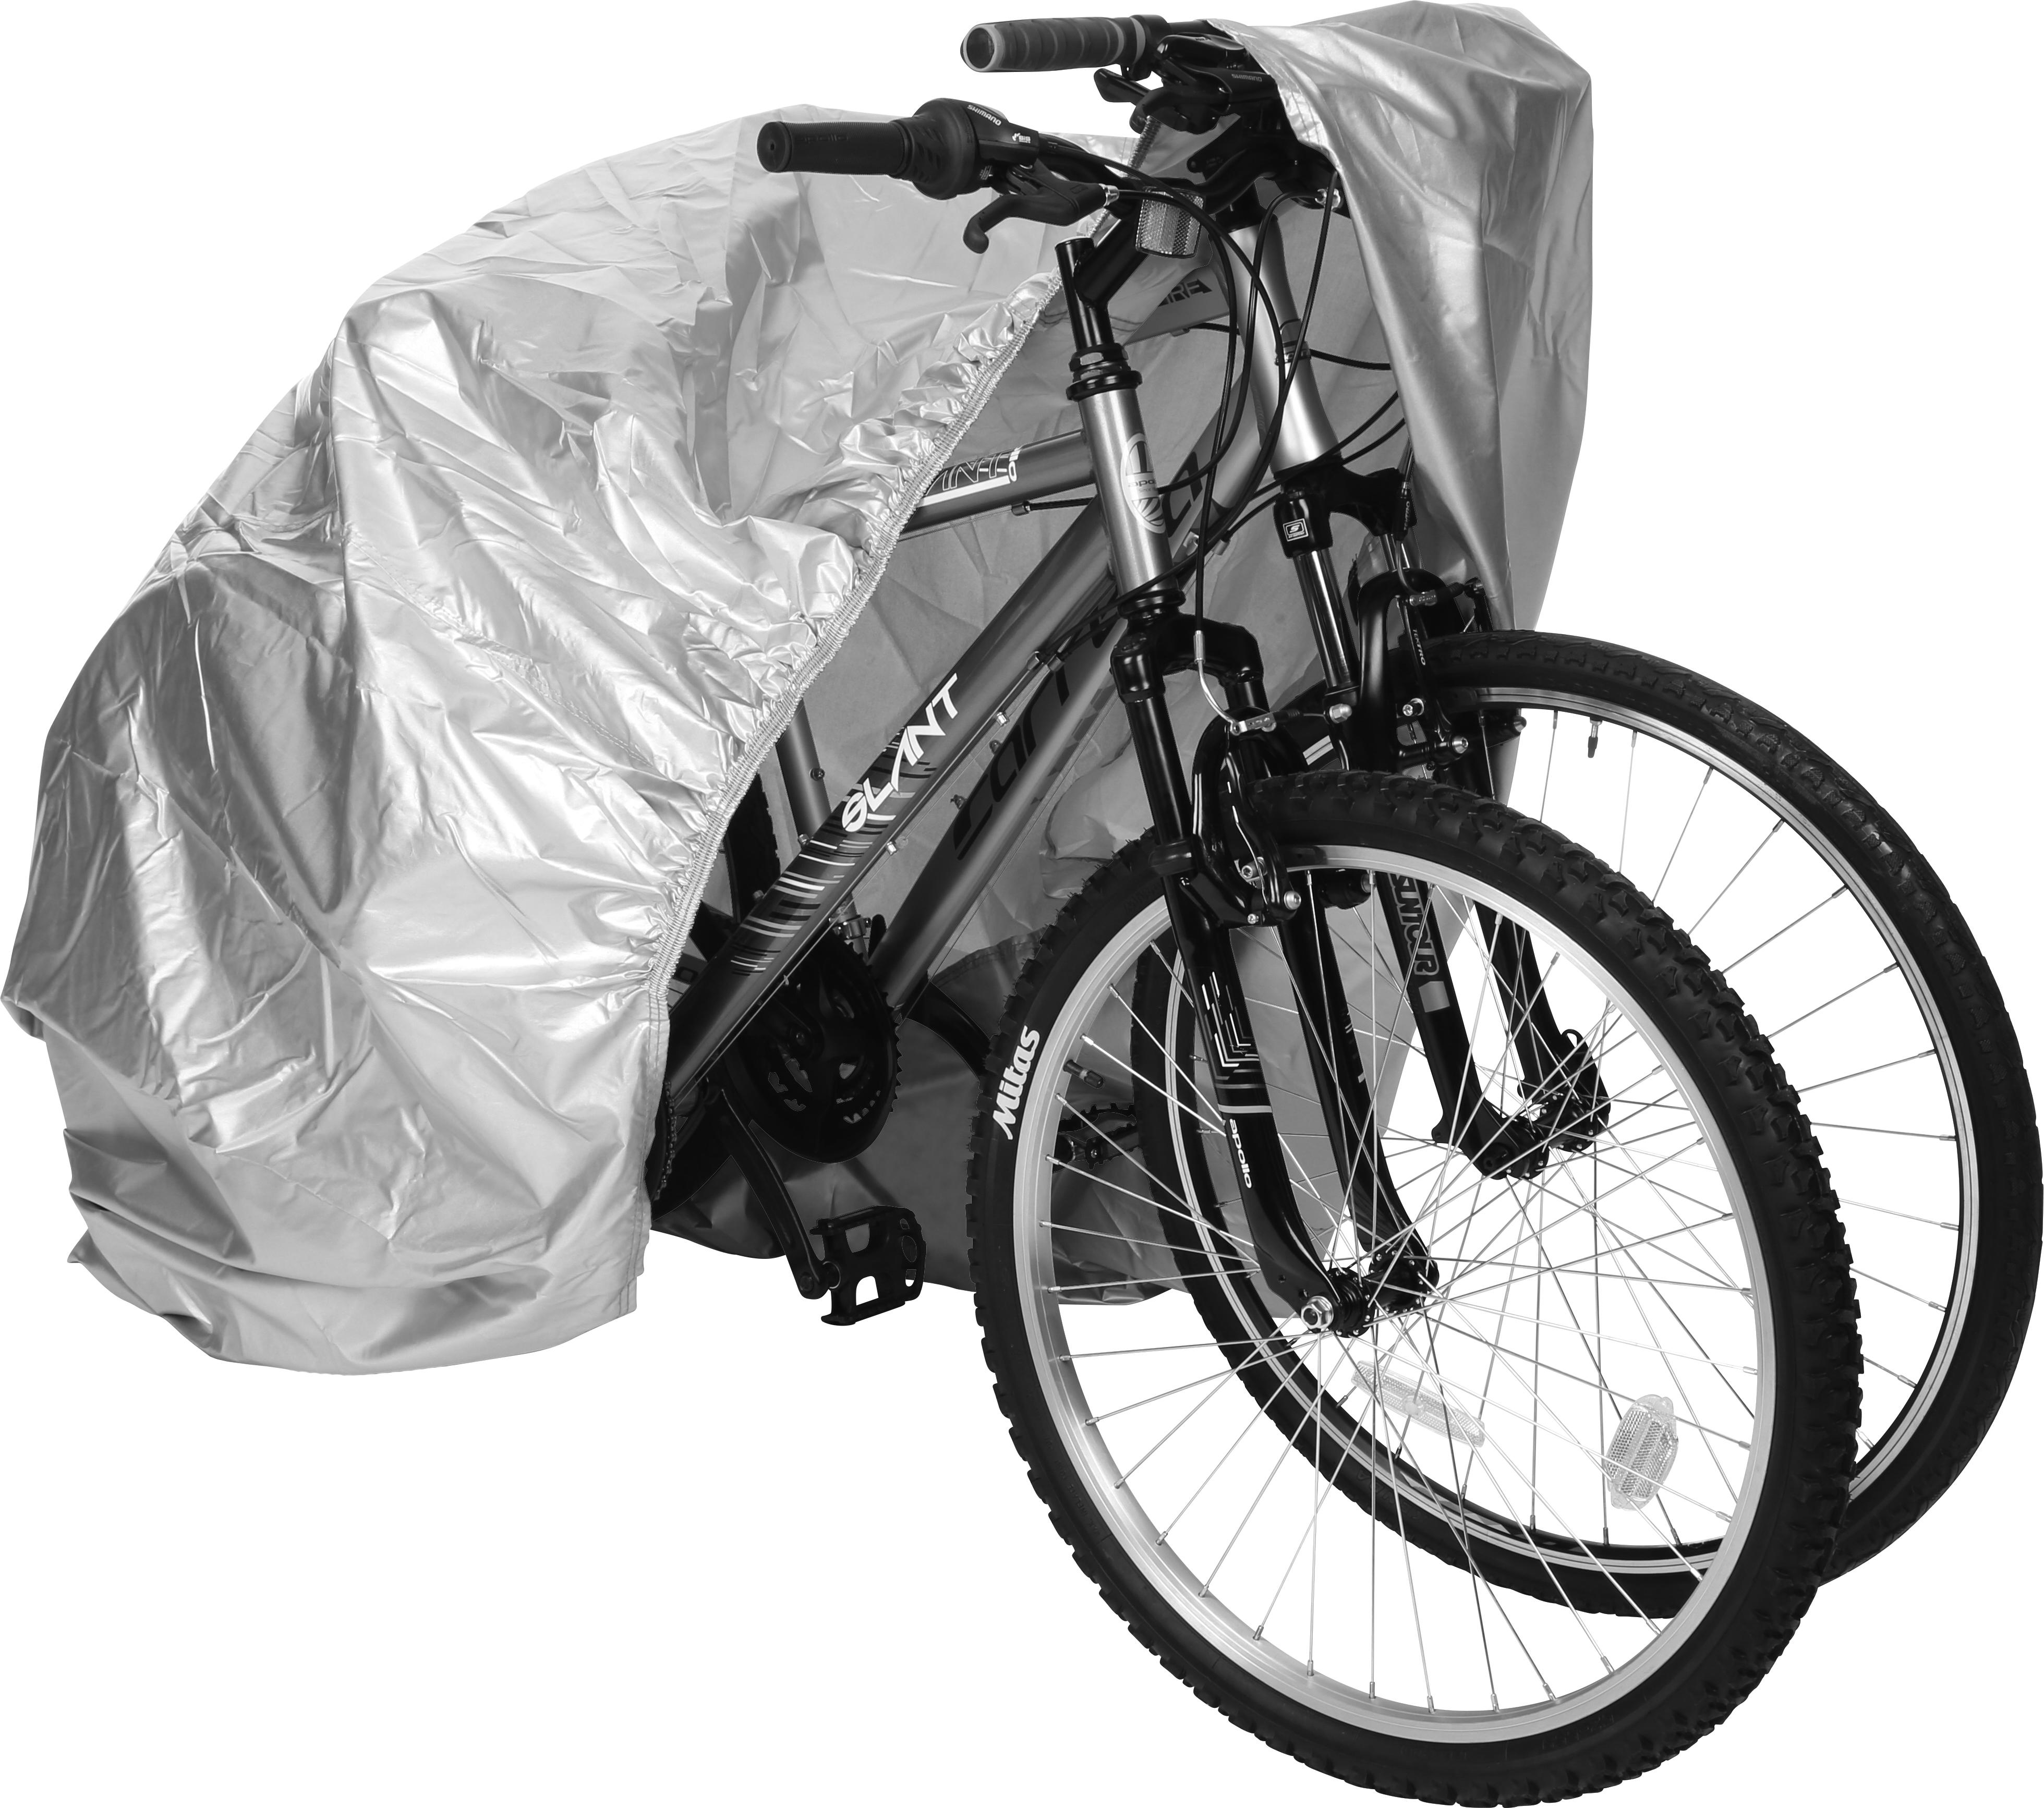 do halfords deliver bikes